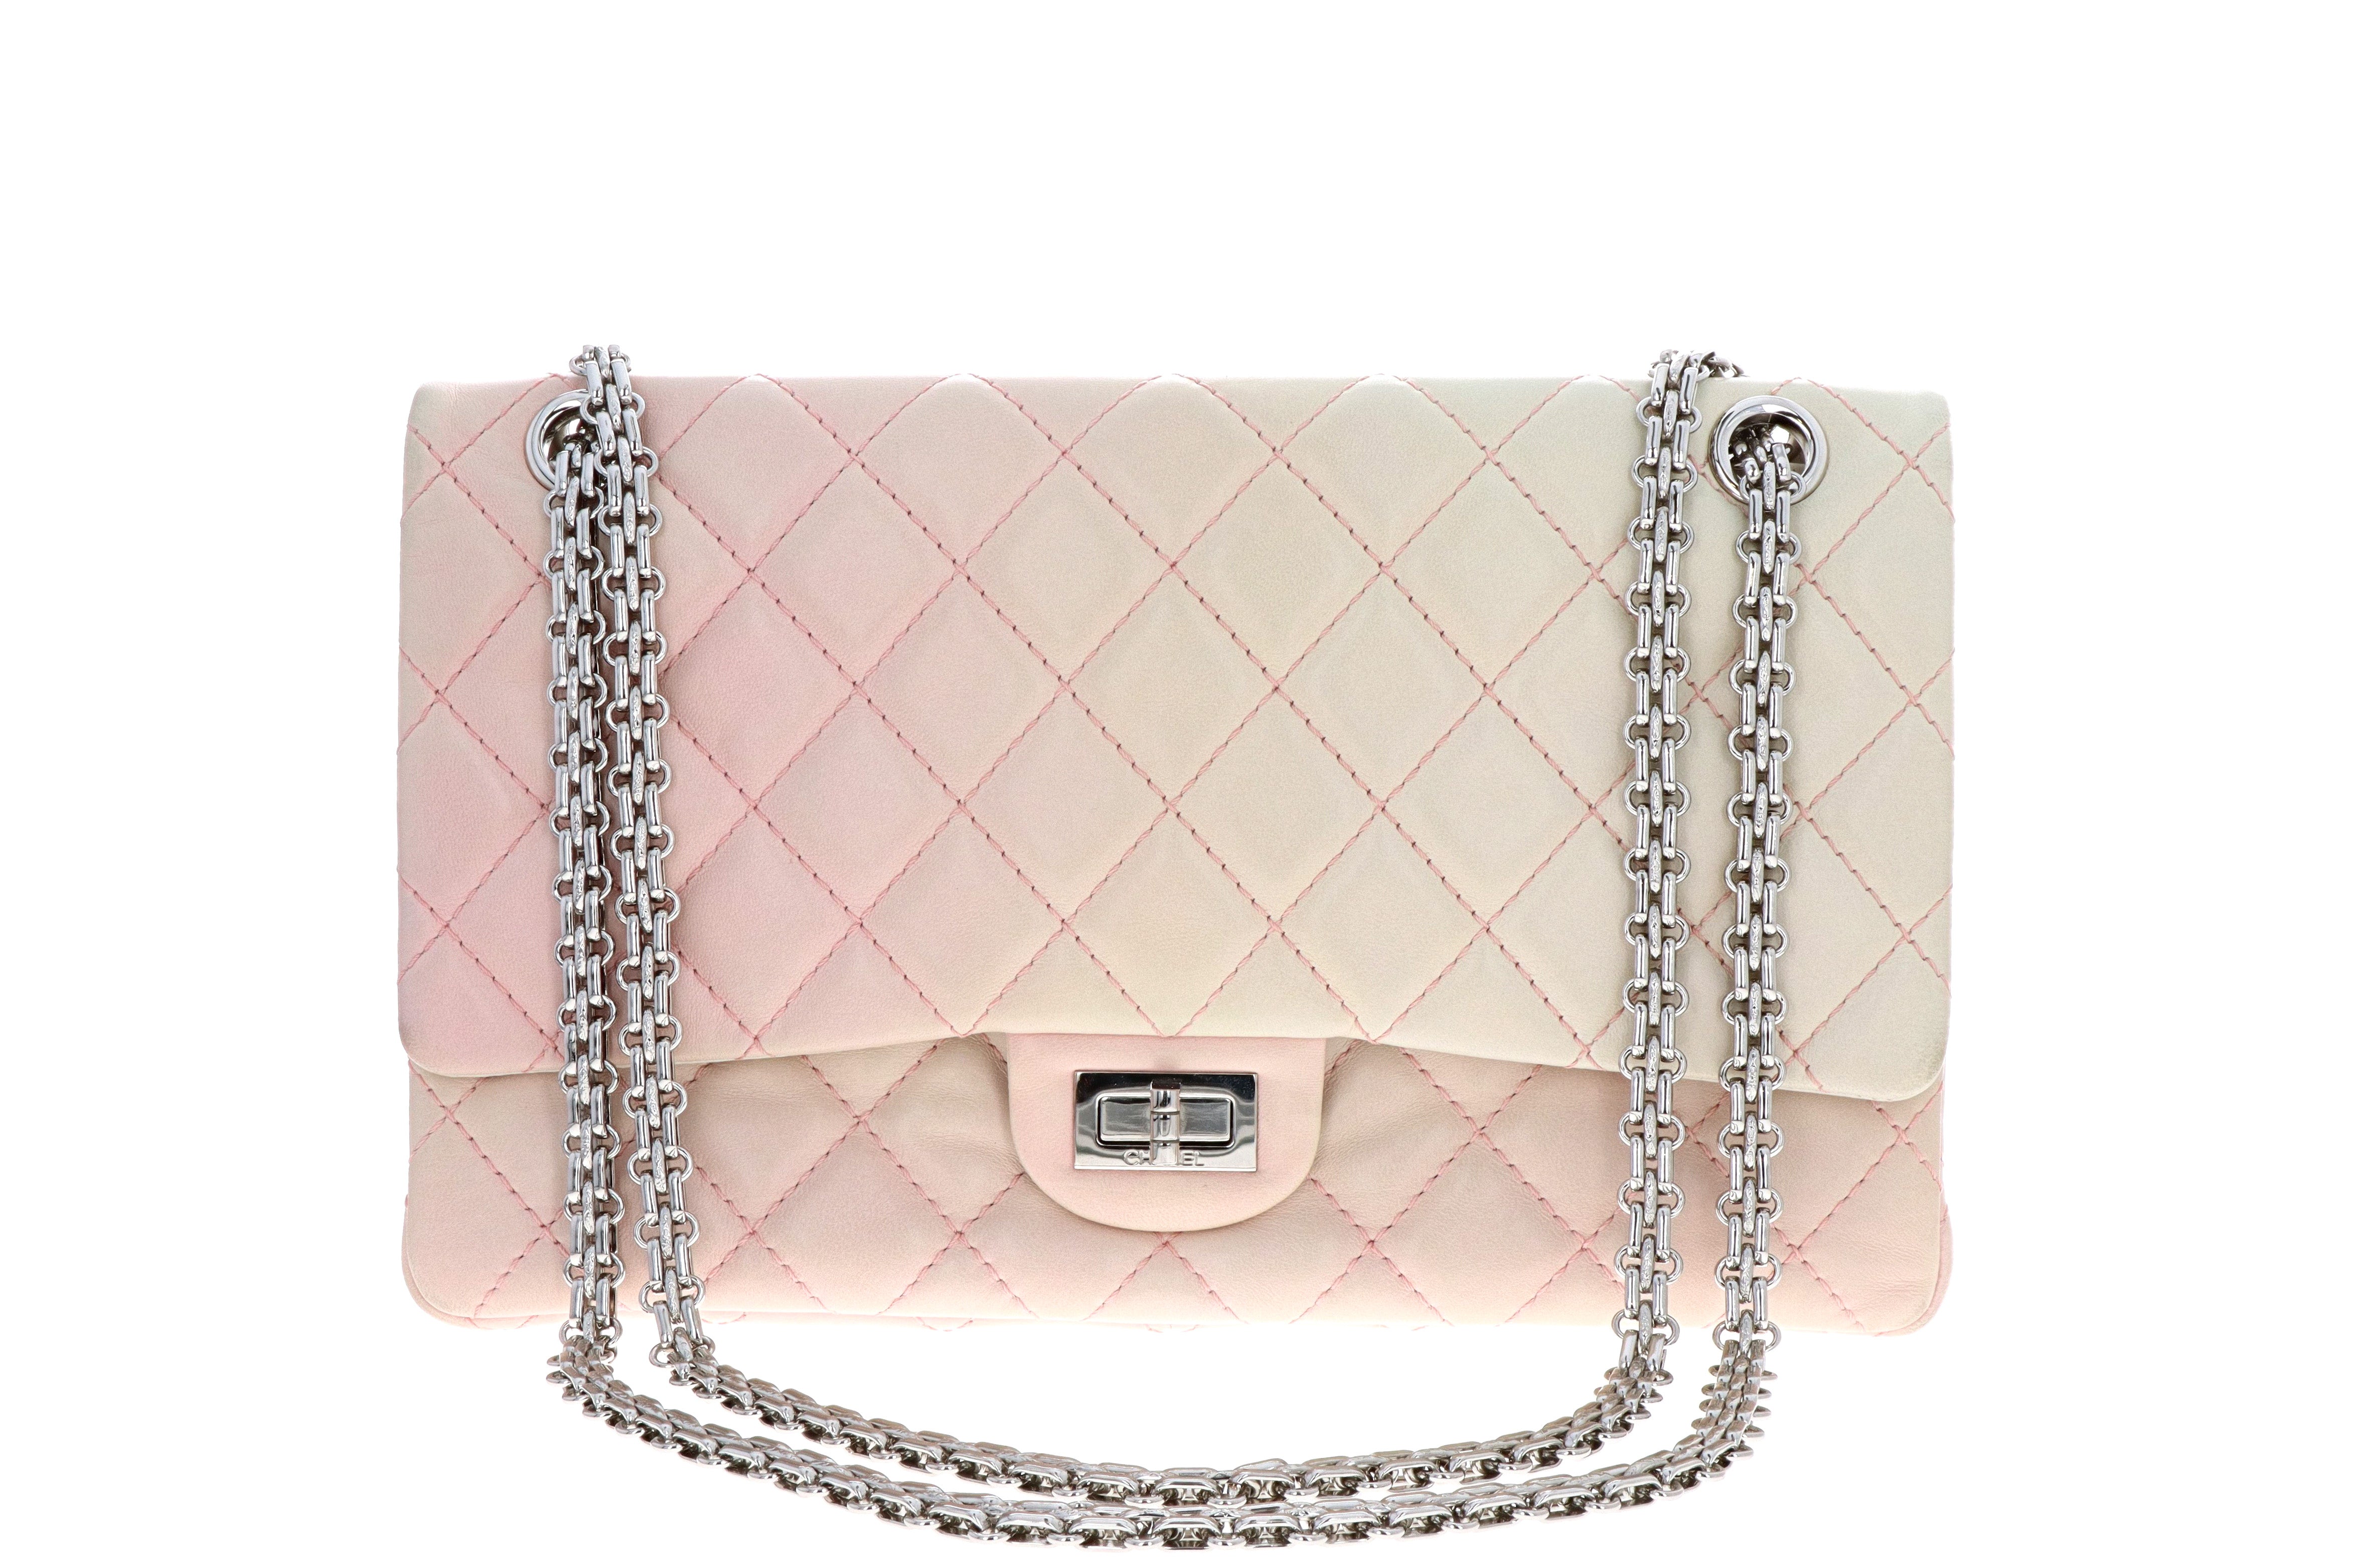 Chanel Lambskin 2.55 Reissue 227 Double Flap Bag Degrade Pink